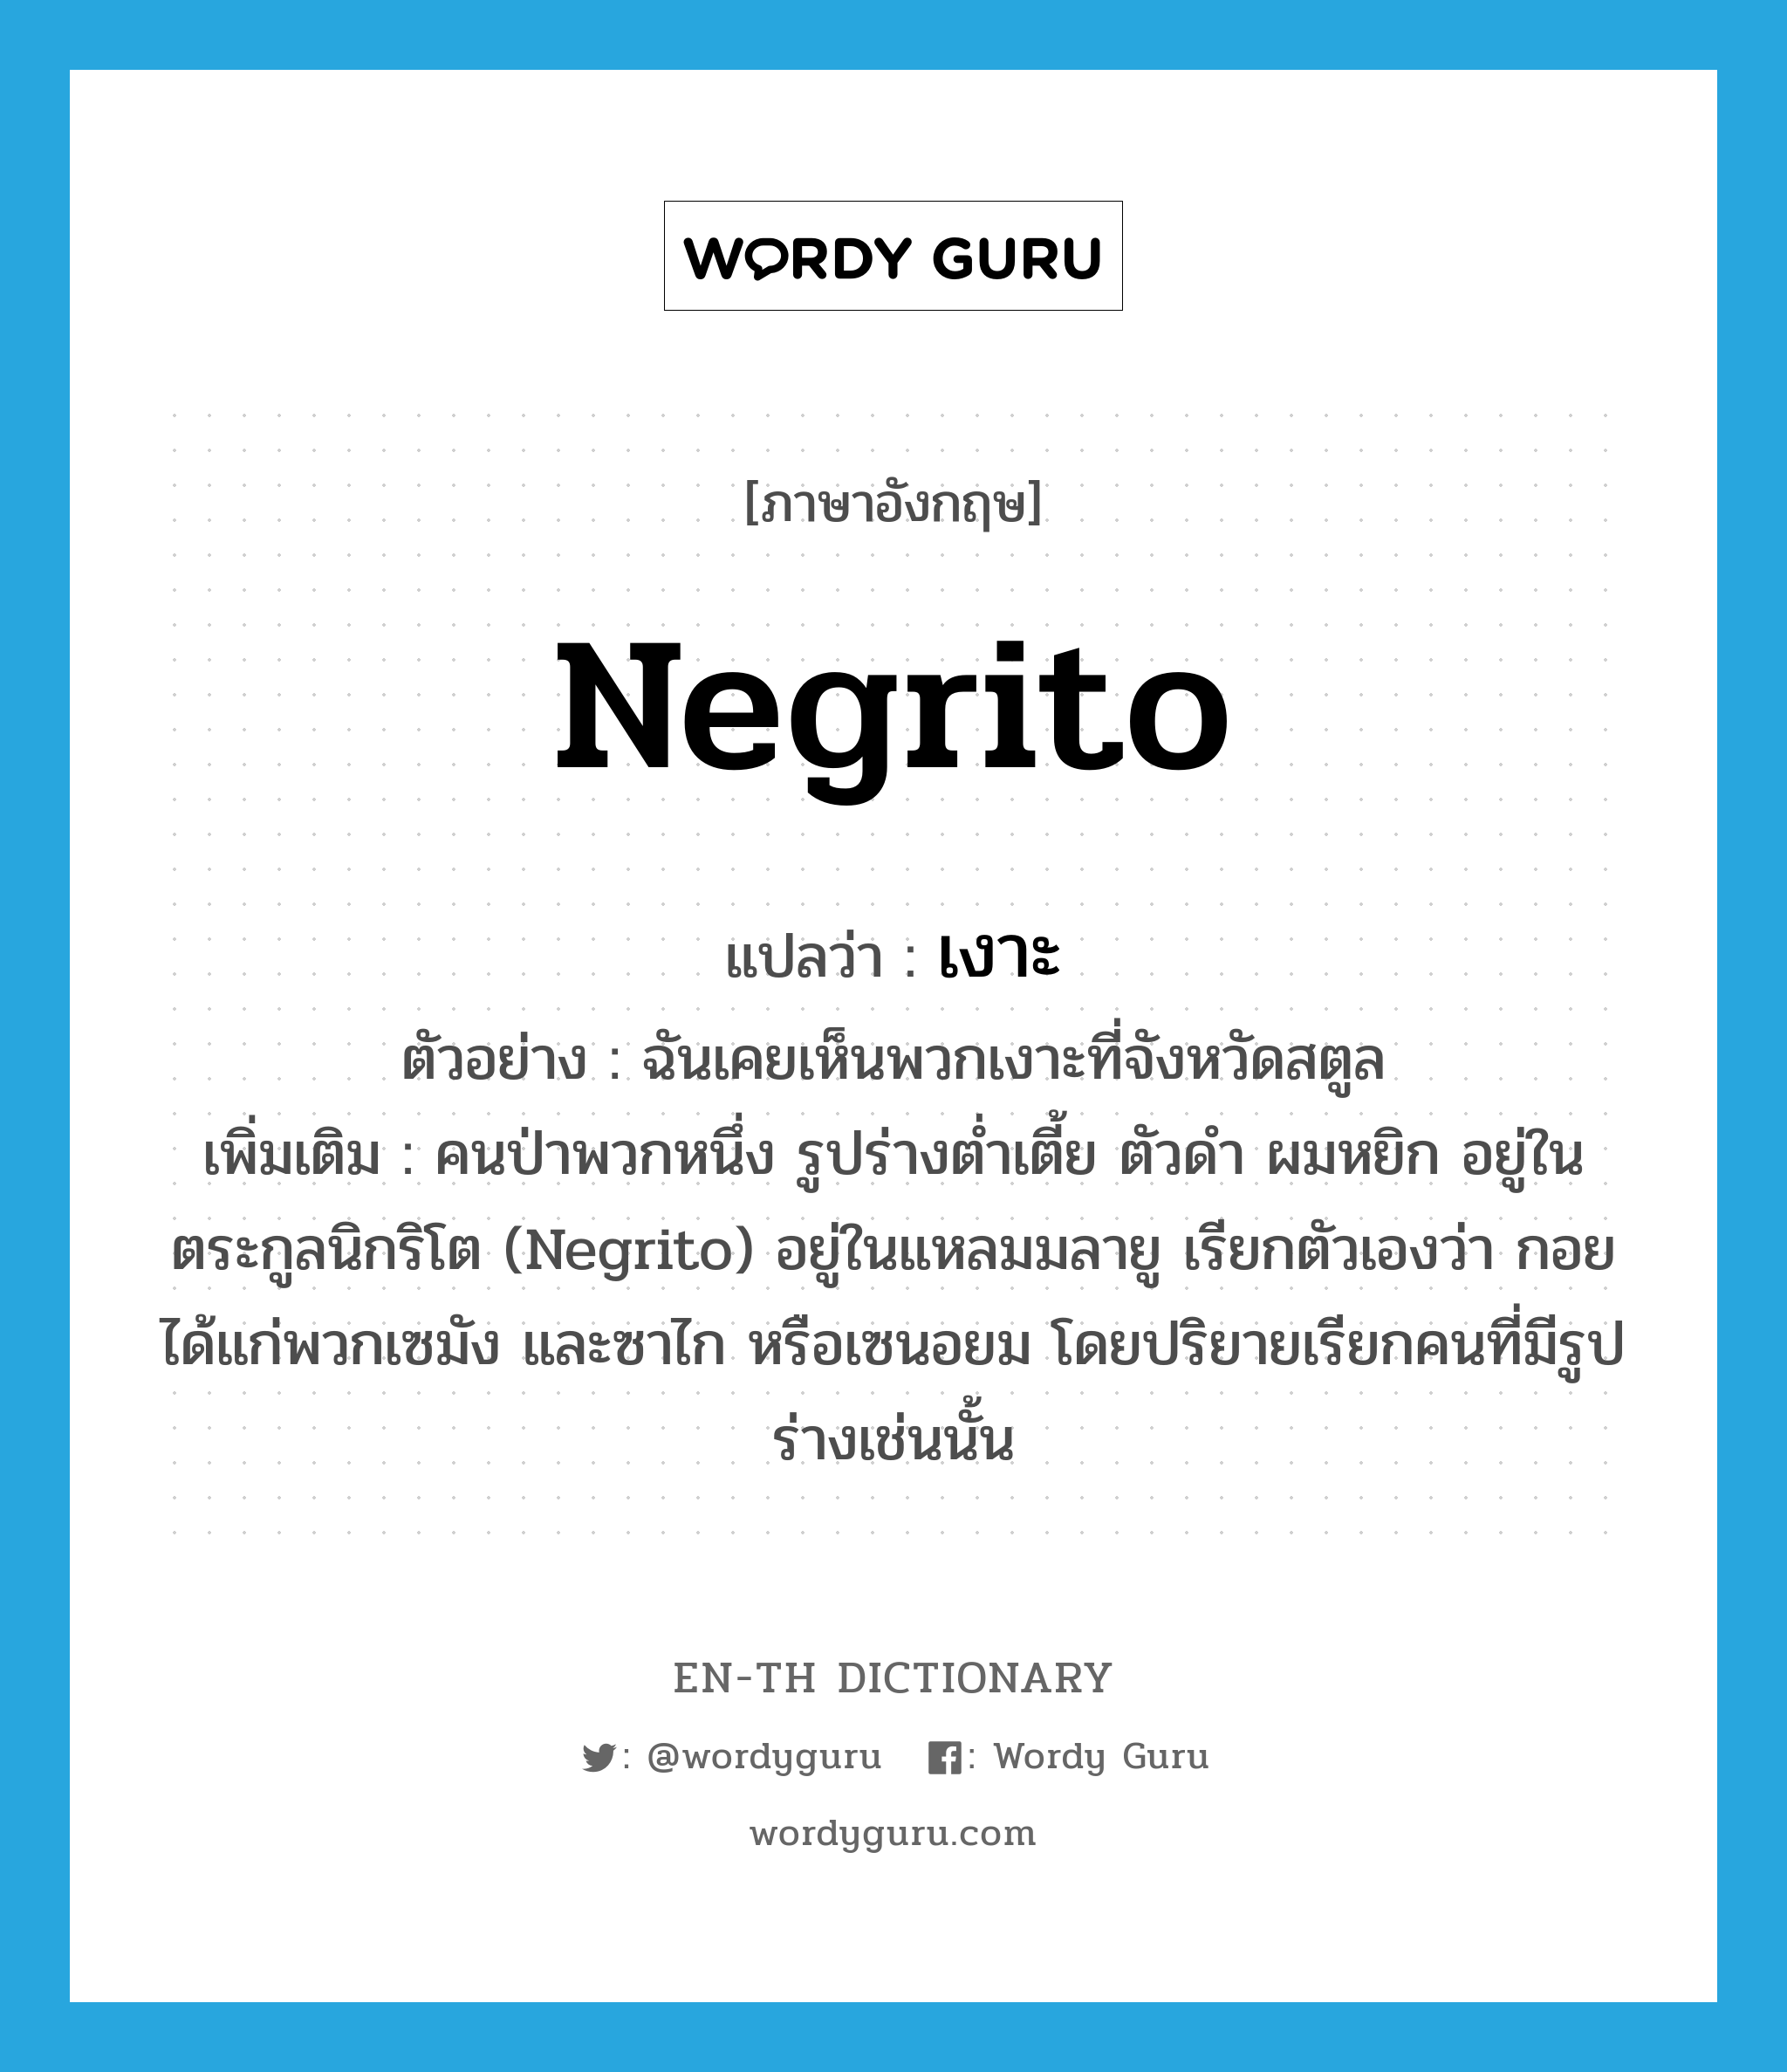 Negrito แปลว่า?, คำศัพท์ภาษาอังกฤษ Negrito แปลว่า เงาะ ประเภท N ตัวอย่าง ฉันเคยเห็นพวกเงาะที่จังหวัดสตูล เพิ่มเติม คนป่าพวกหนึ่ง รูปร่างต่ำเตี้ย ตัวดำ ผมหยิก อยู่ในตระกูลนิกริโต (Negrito) อยู่ในแหลมมลายู เรียกตัวเองว่า กอย ได้แก่พวกเซมัง และซาไก หรือเซนอยม โดยปริยายเรียกคนที่มีรูปร่างเช่นนั้น หมวด N